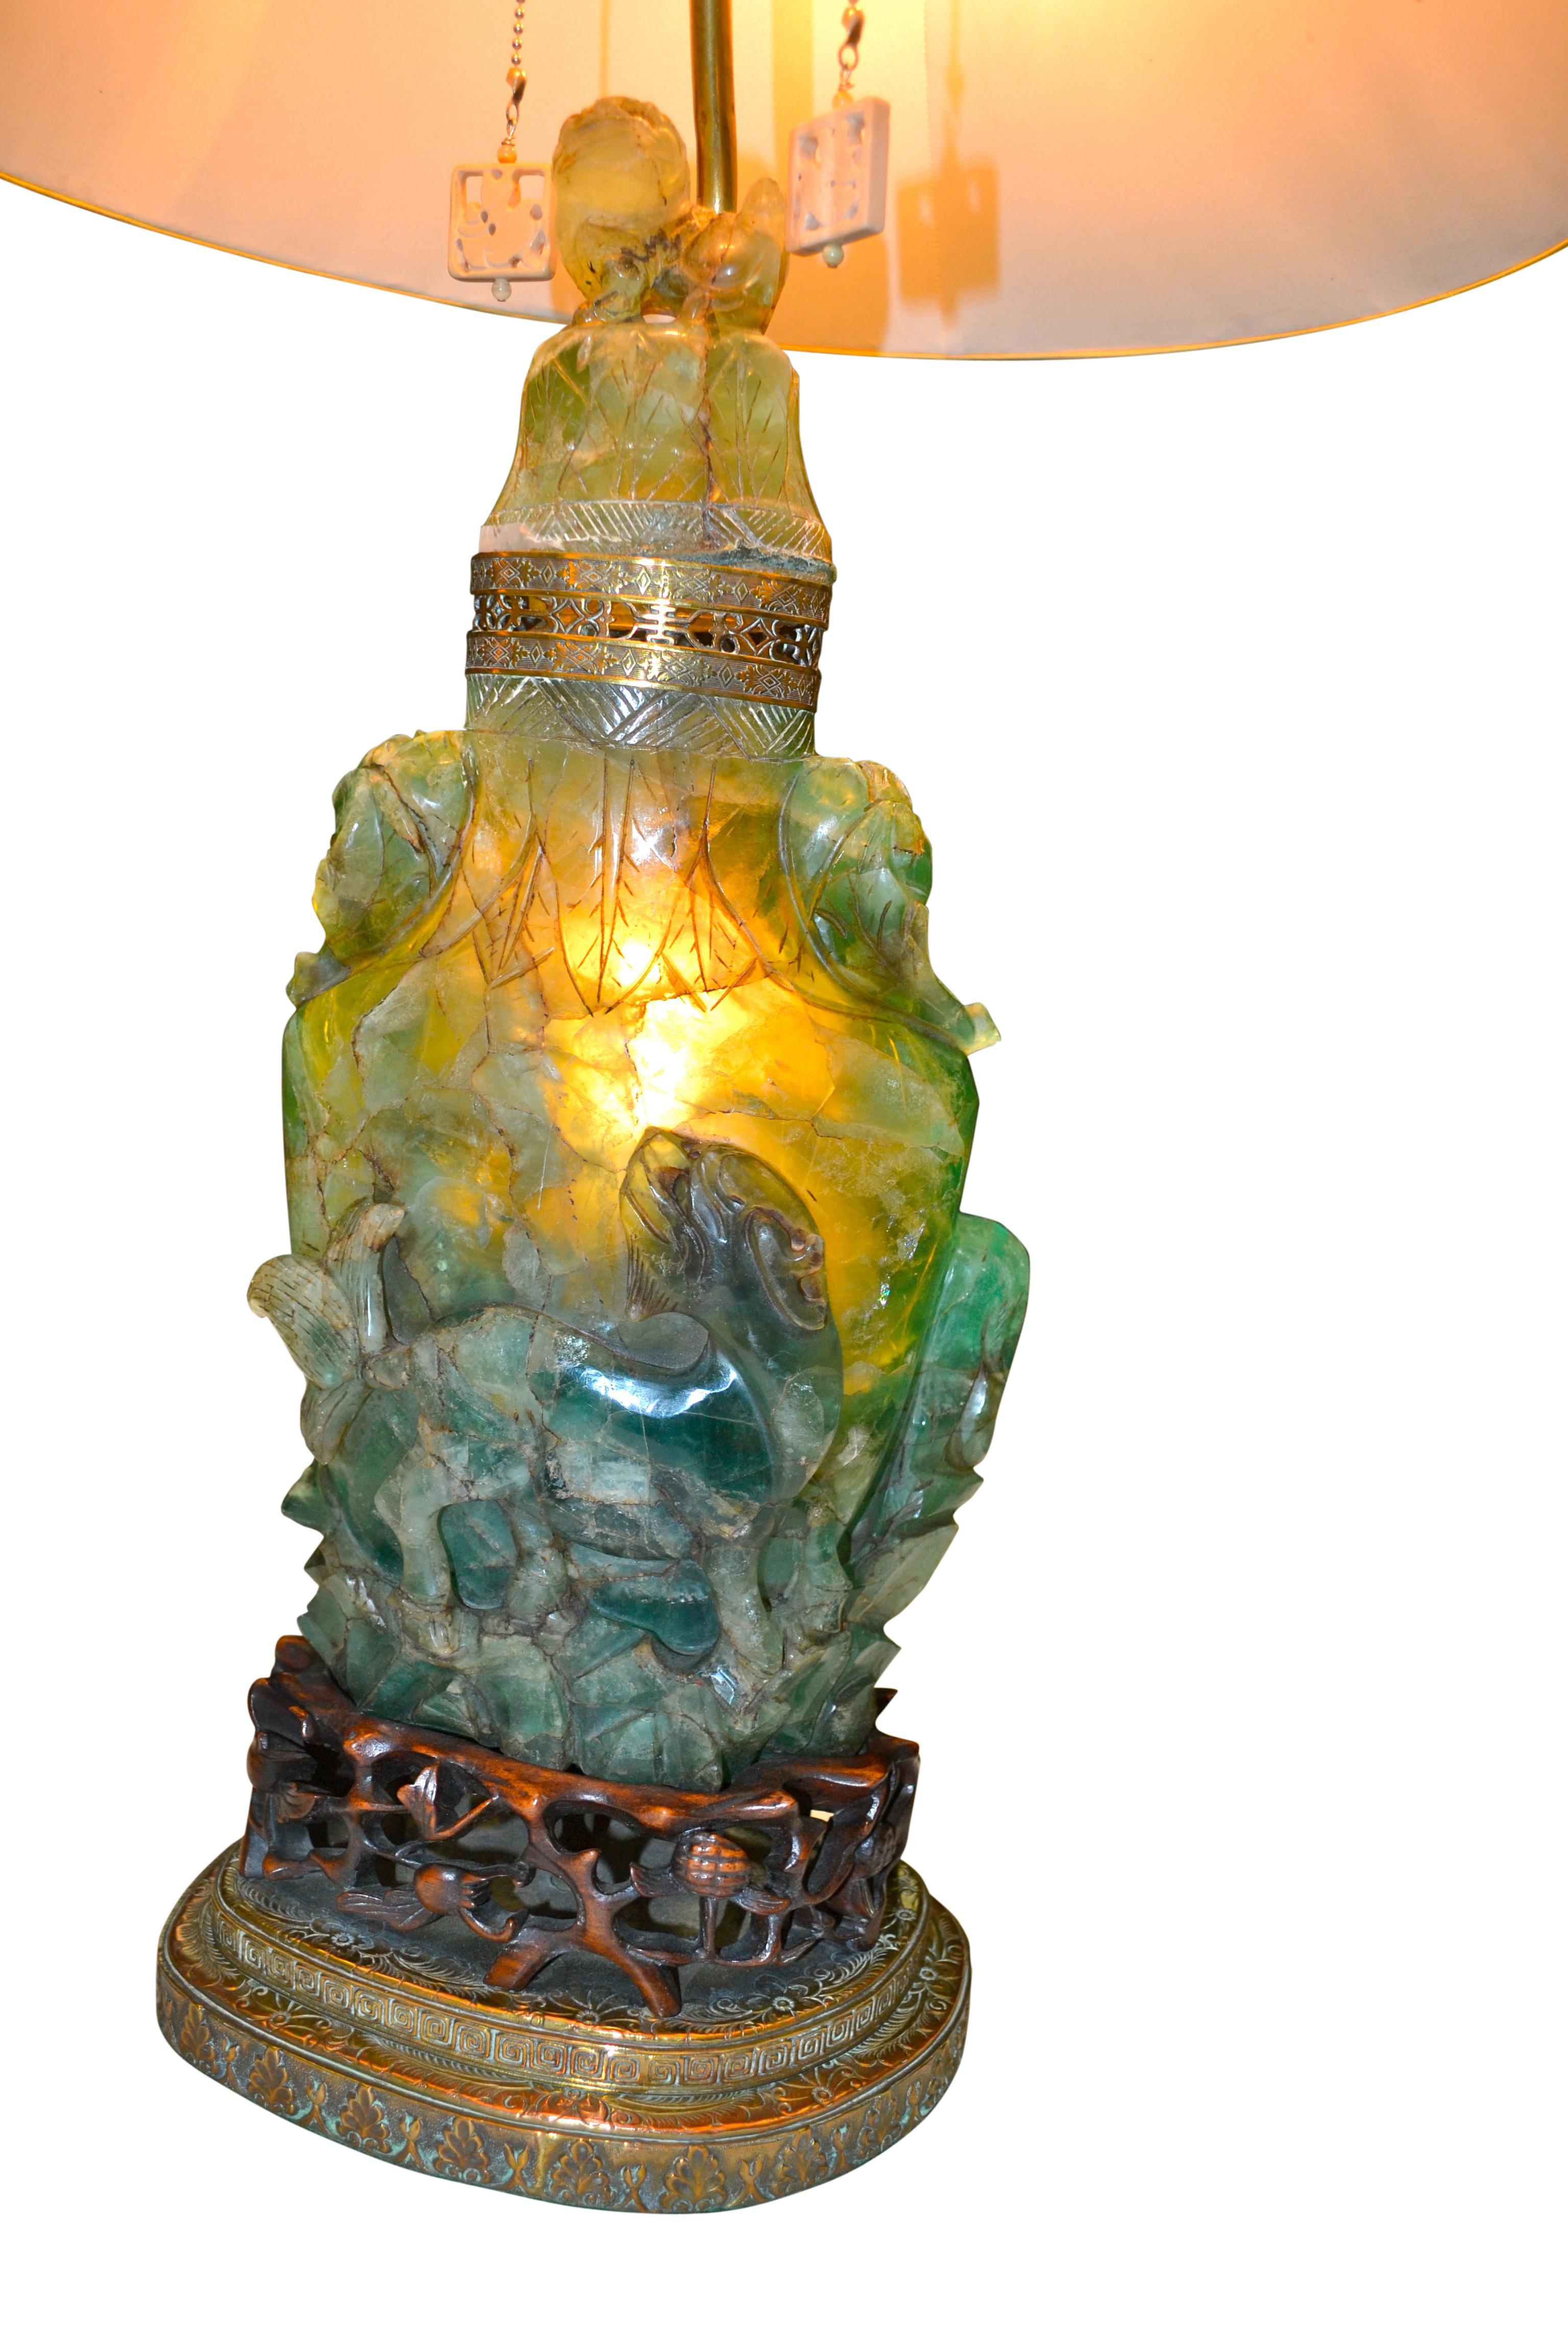 Une lampe chinoise relativement grande en pierre sculptée montée sur une base en laiton étagé et en bois de rose sculpté. La pierre sculptée est souvent appelée jadéite ou quartz, mais elle appartient en fait à la famille des fluorites. Sa base de